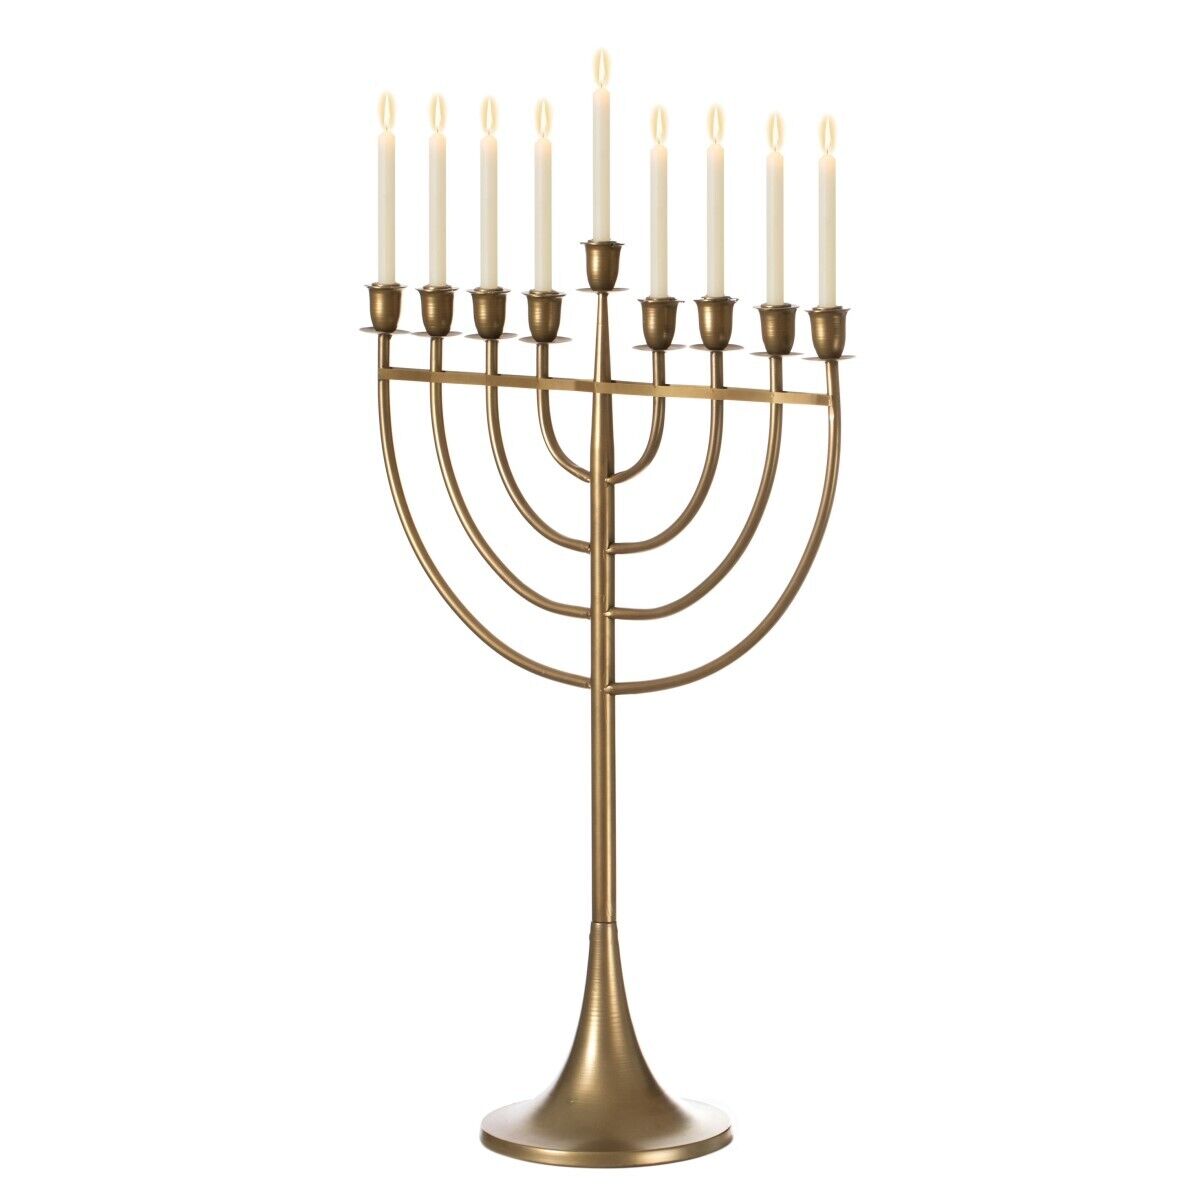 Vintiquewise QI004119.GD.M Modern Solid Metal Judaica Hanukkah Menorah 